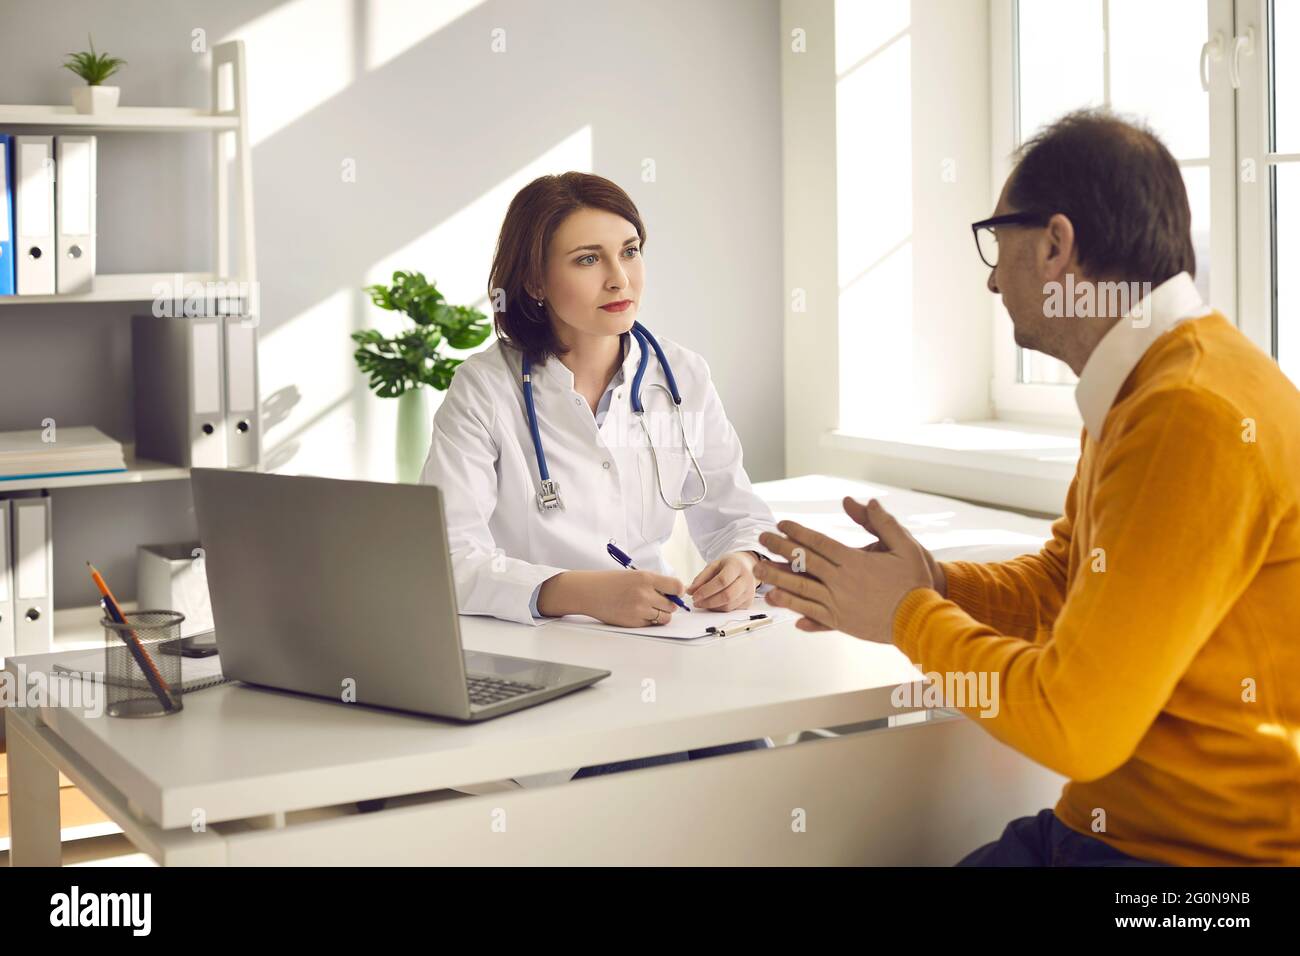 Paziente maschile di mezza età in un reparto ospedaliero consulta una dottoressa sulla sua salute. Foto Stock